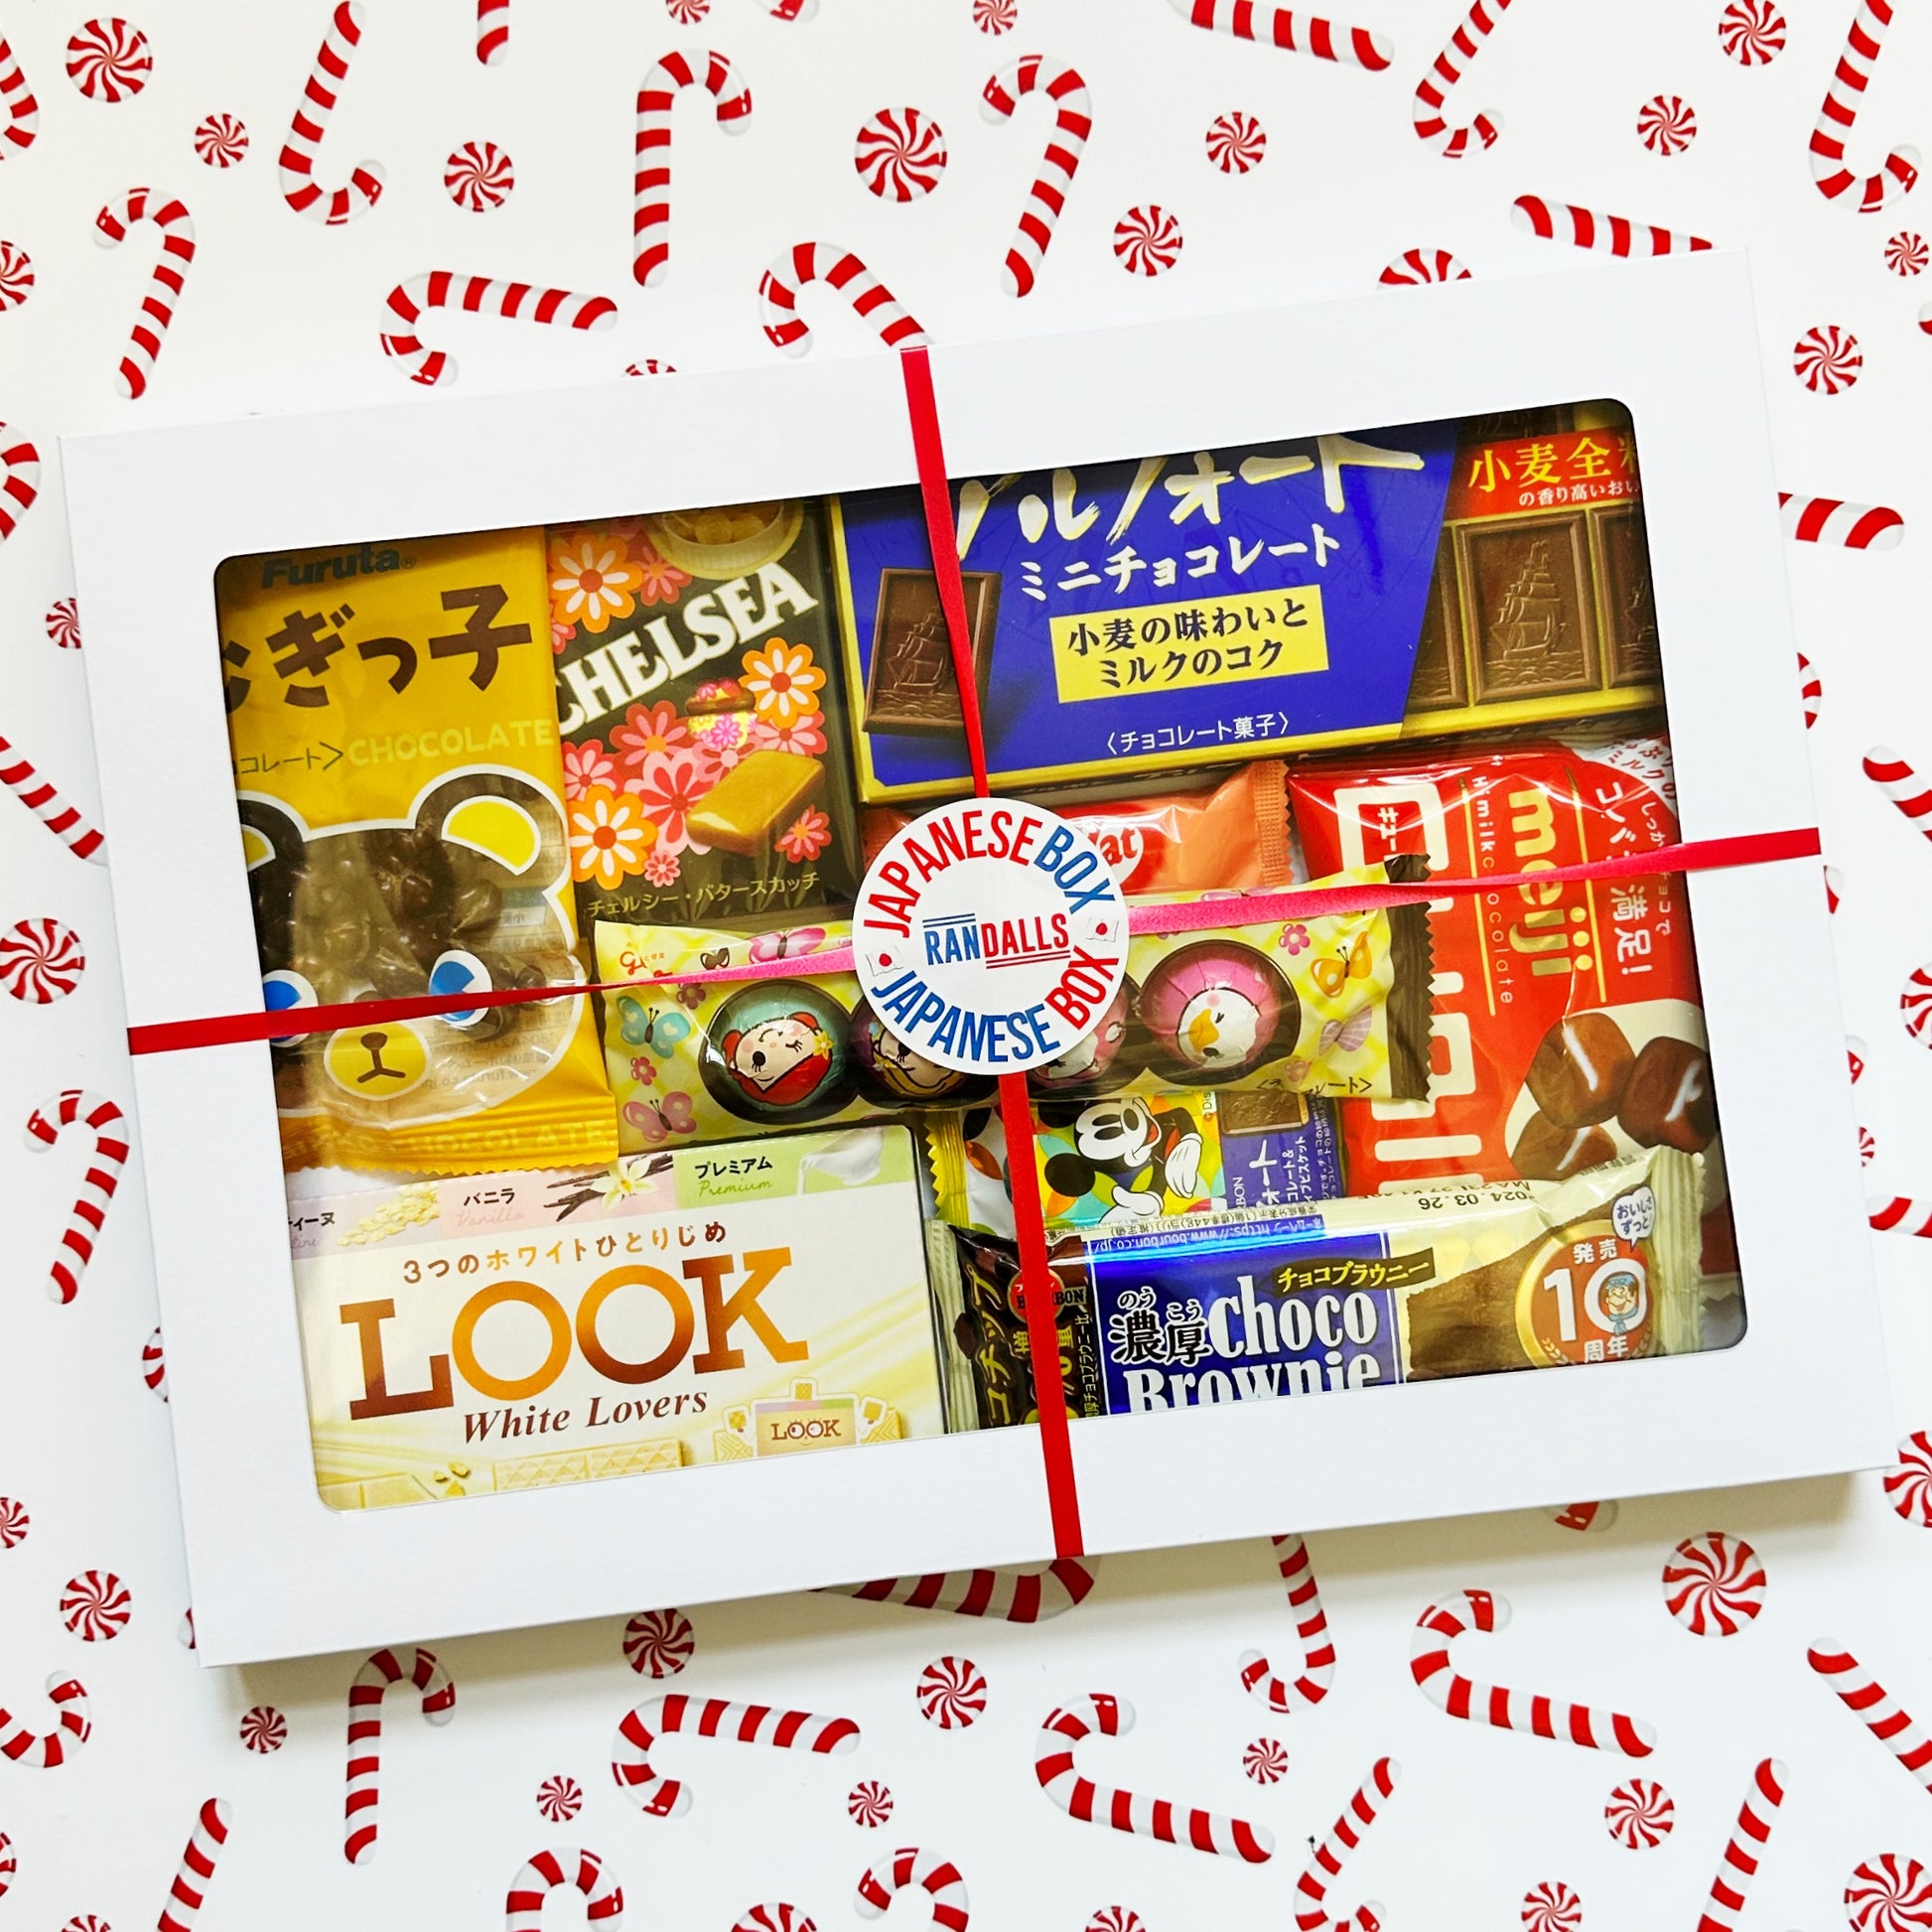 japan, japanese, japan box, japan gift box, japan food, gift, gift box, chocolate box, japan chocolate, asia, randalls, randallsuk